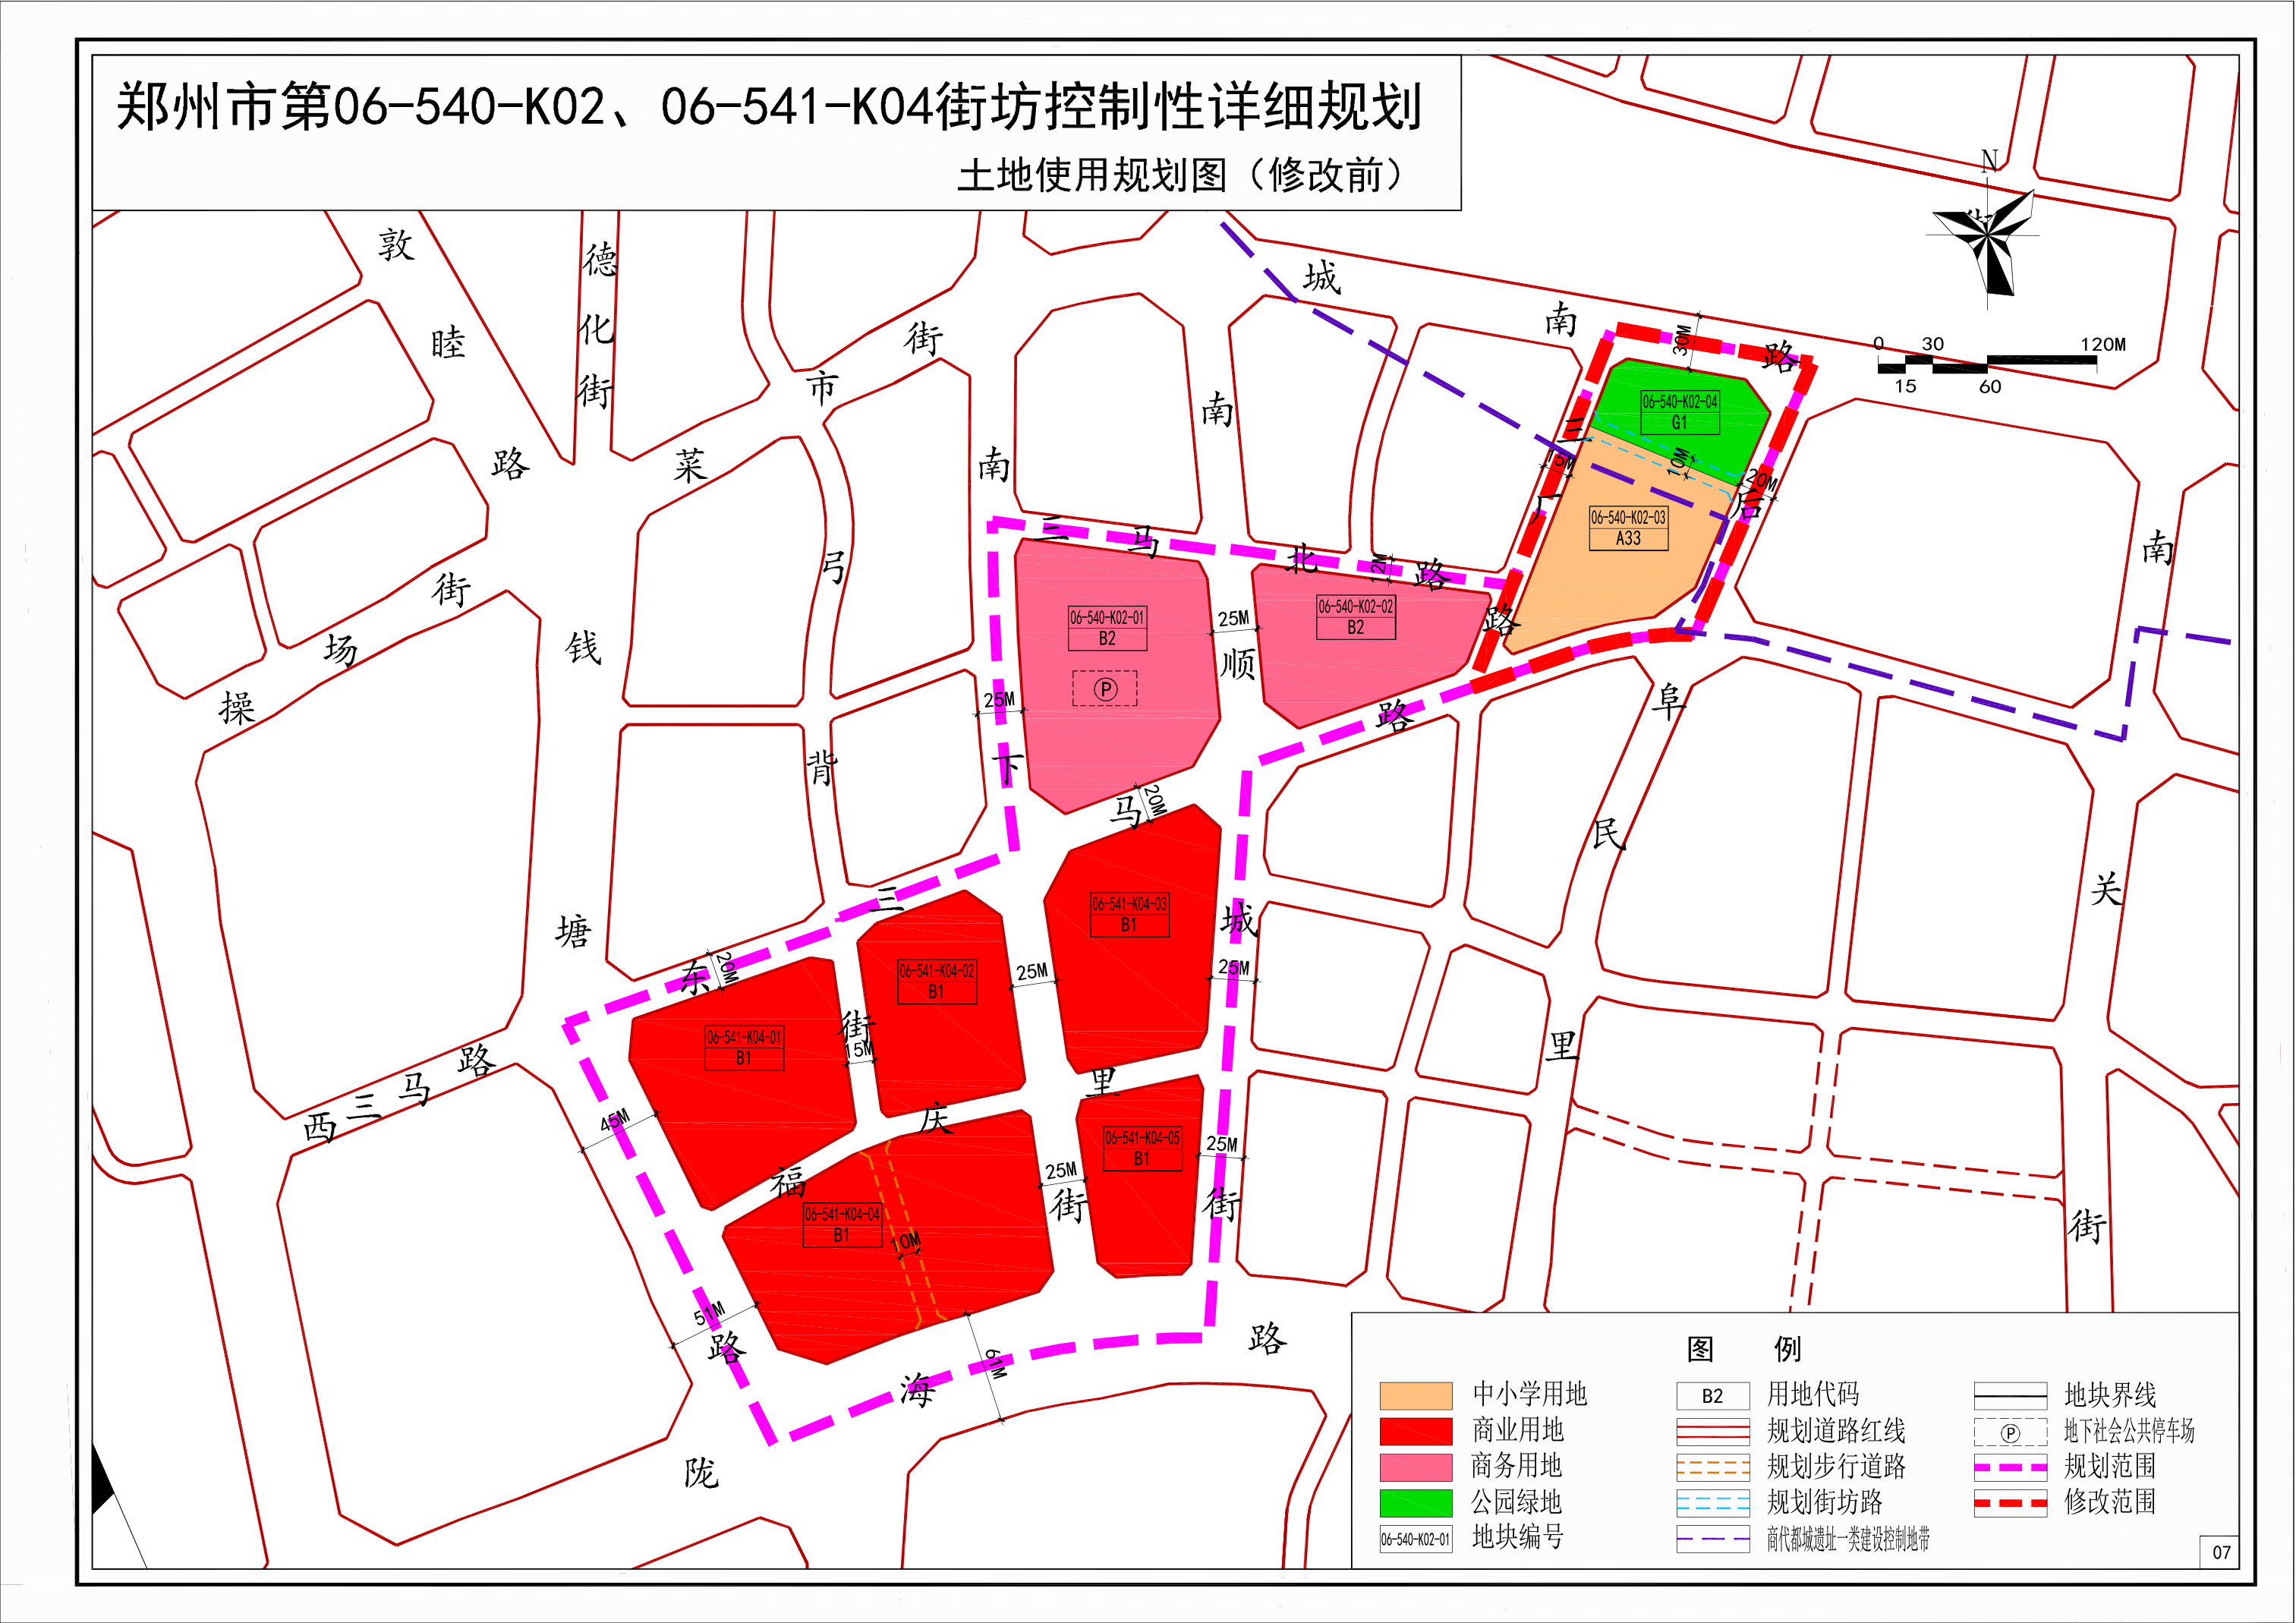 《郑州市第06-540-K02、06-541-K04街坊控制性详细规划》06-540-K02-03、06-540-K02-04地块修改必要性论证